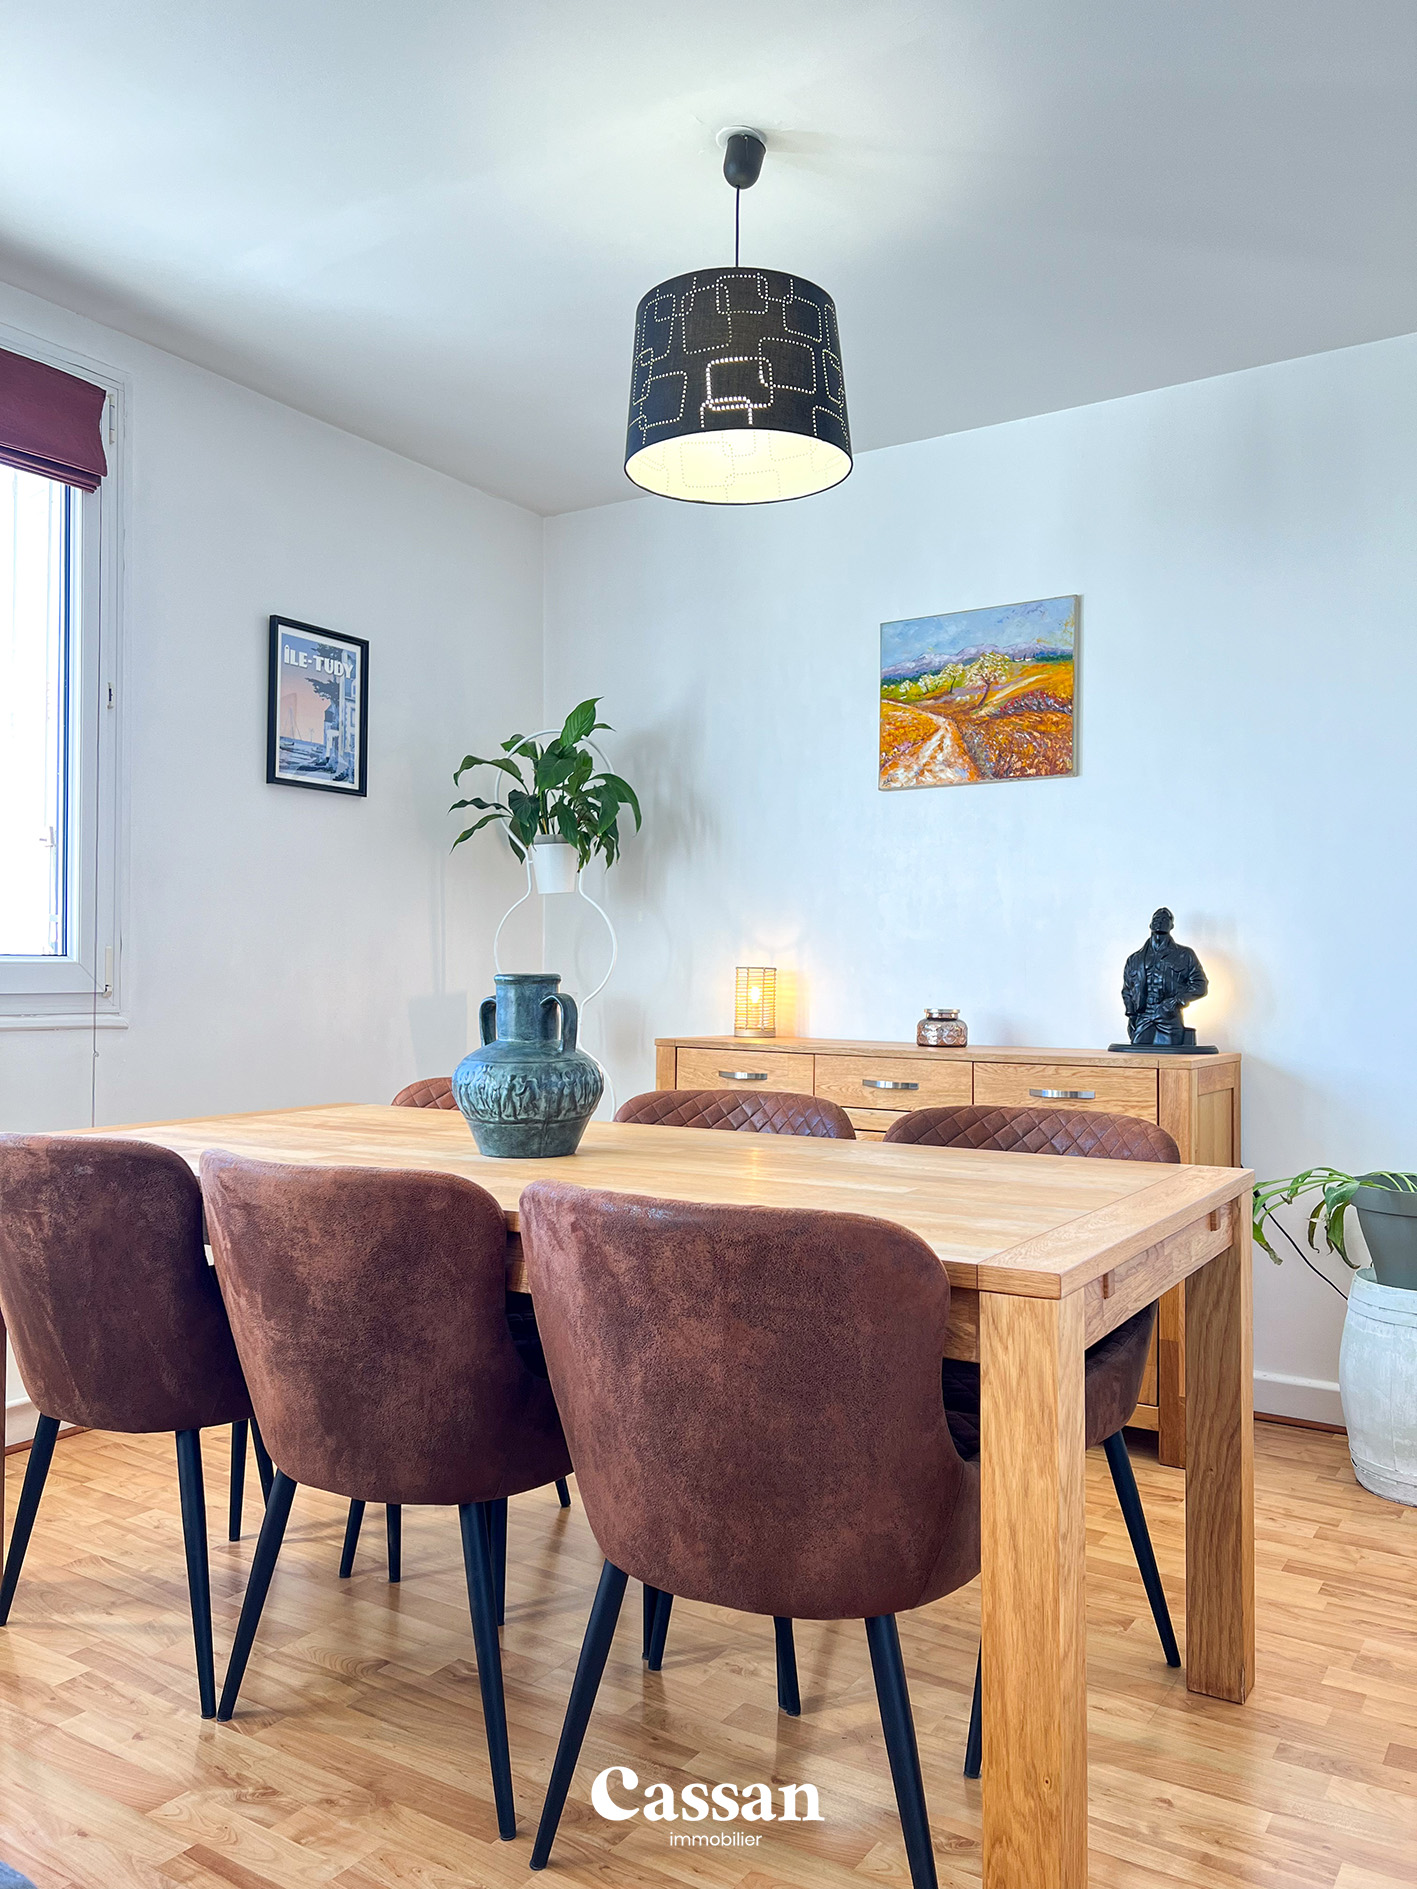 Salle à manger appartement à vendre Aurillac Cassan immobilier agence immobilière